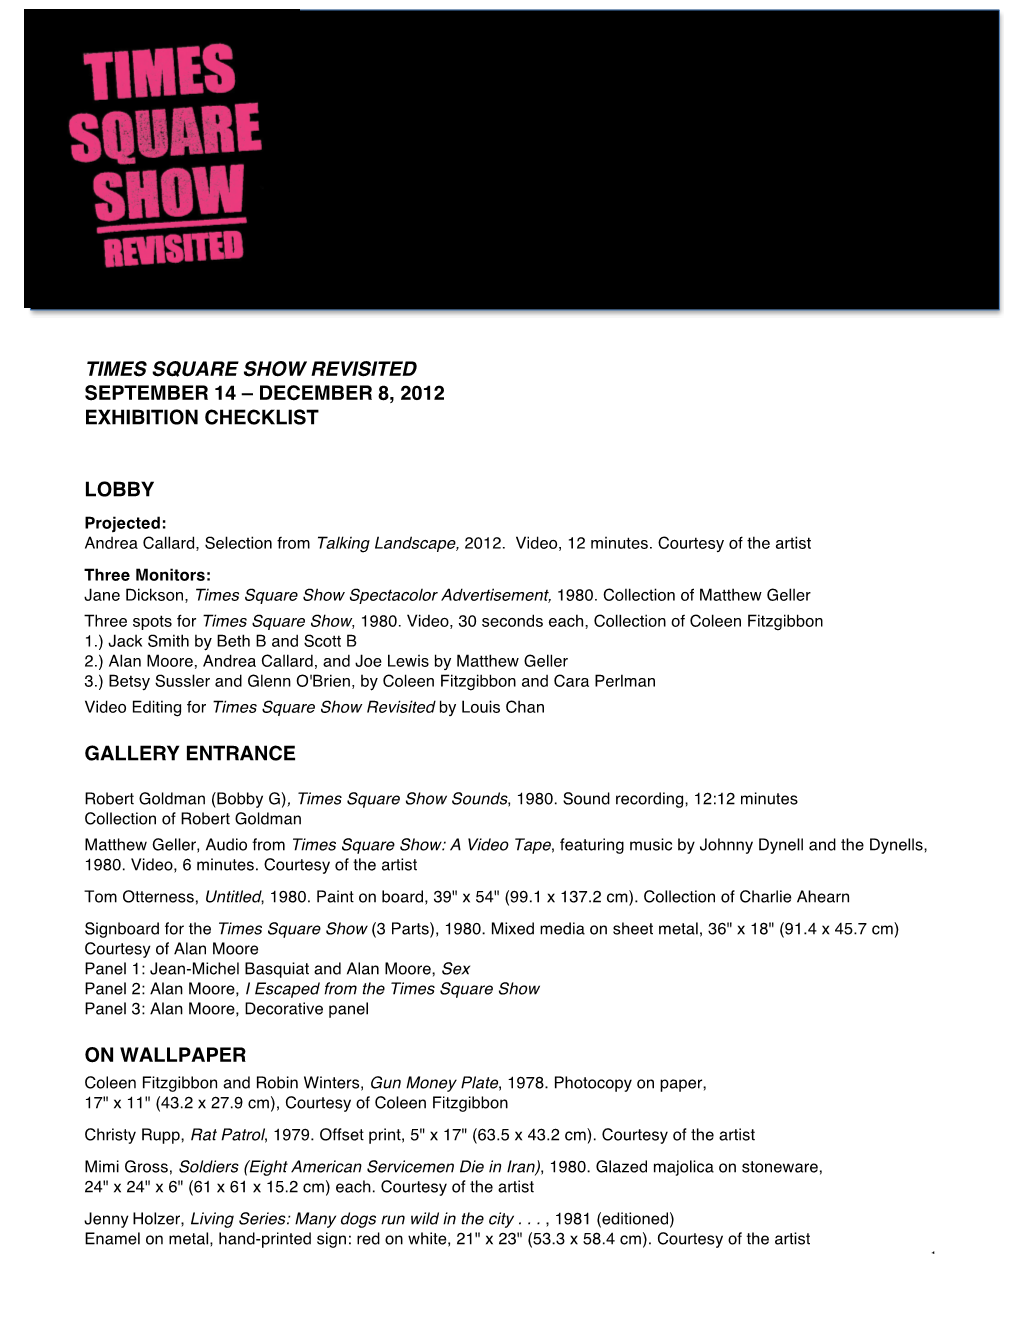 December 8, 2012 Exhibition Checklist